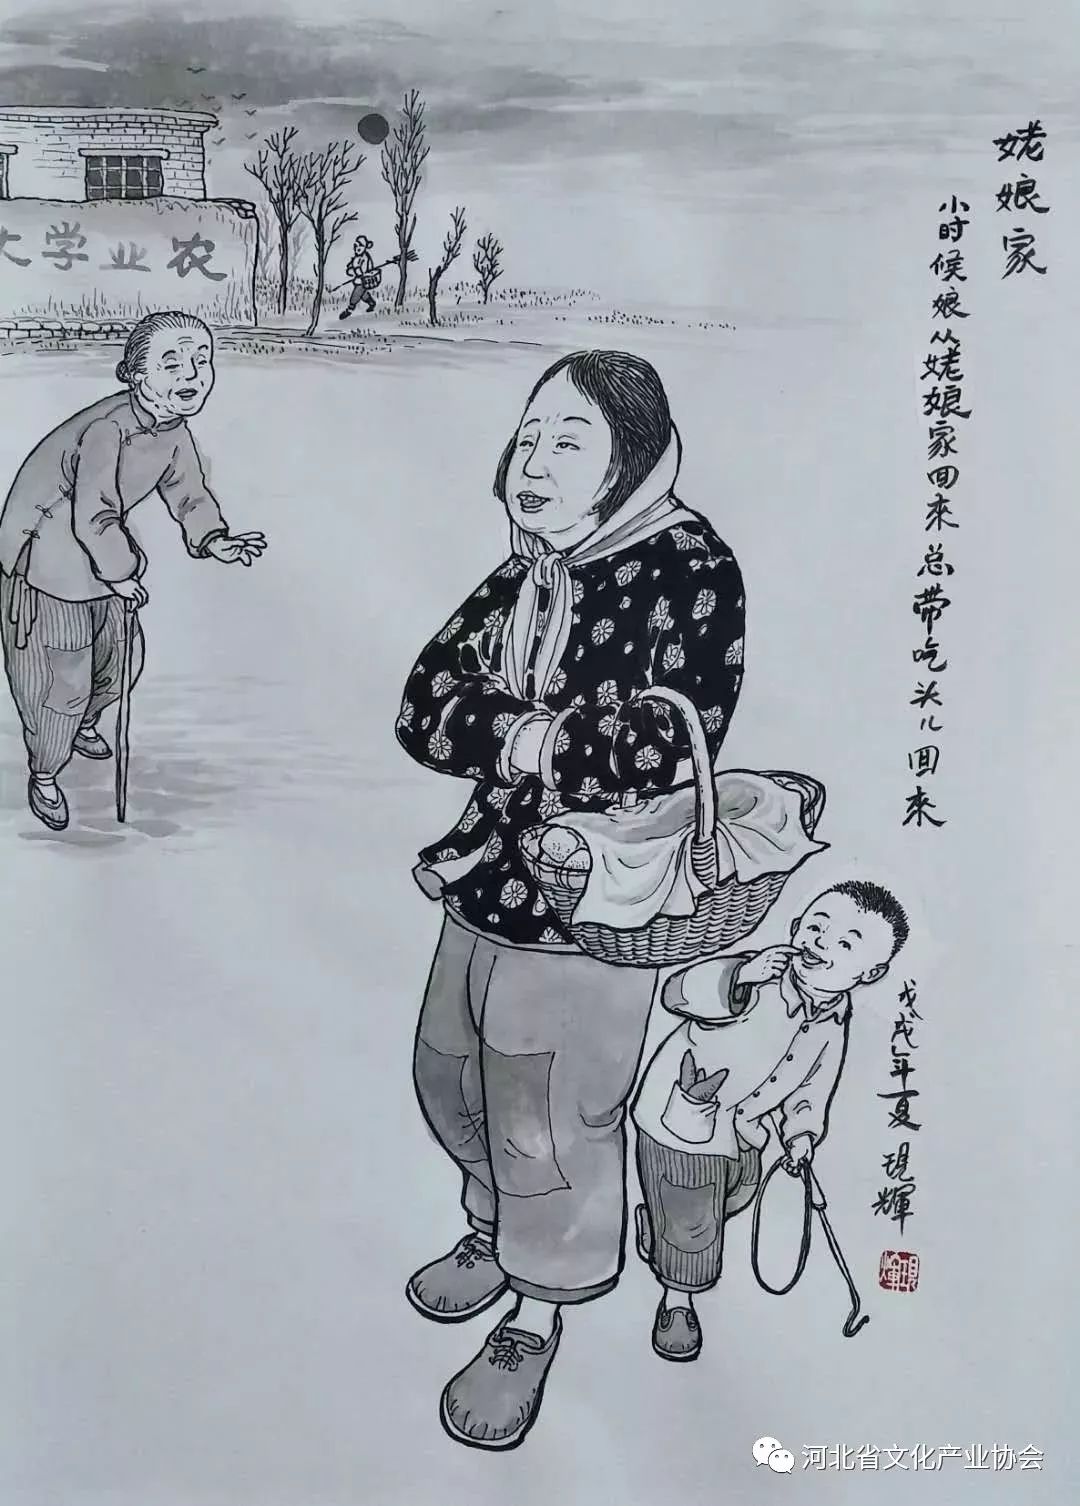 刘现辉民俗画乡愁系列图片